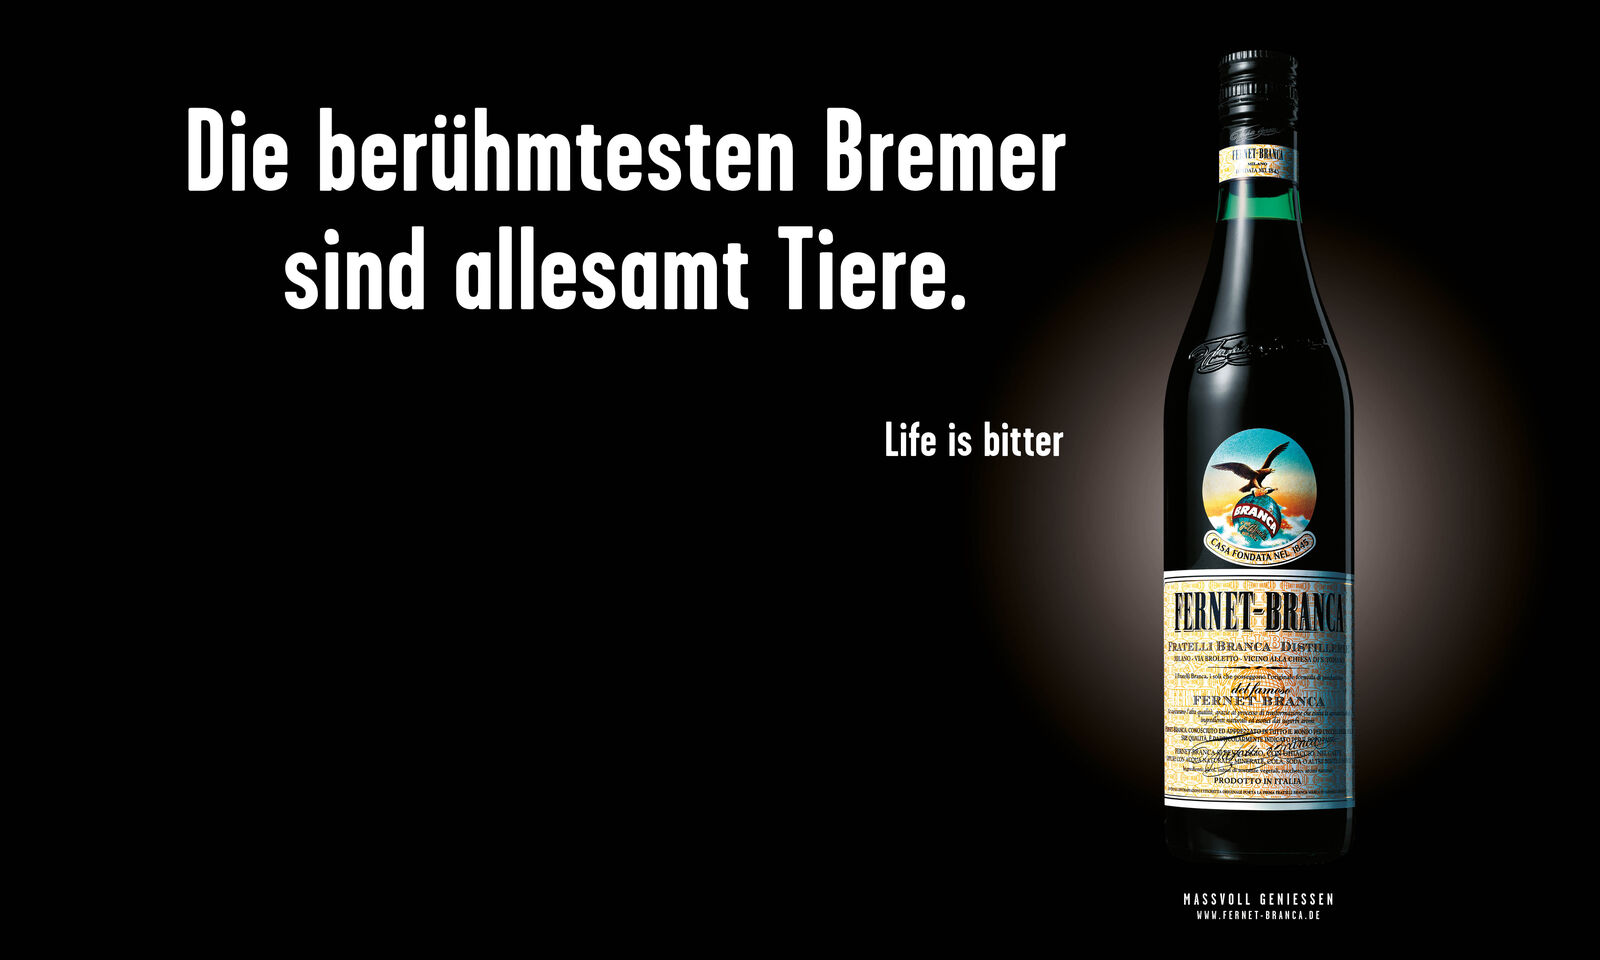 Fernet-Branca “Life is bitter“-Kampagne geht in die nächste Runde